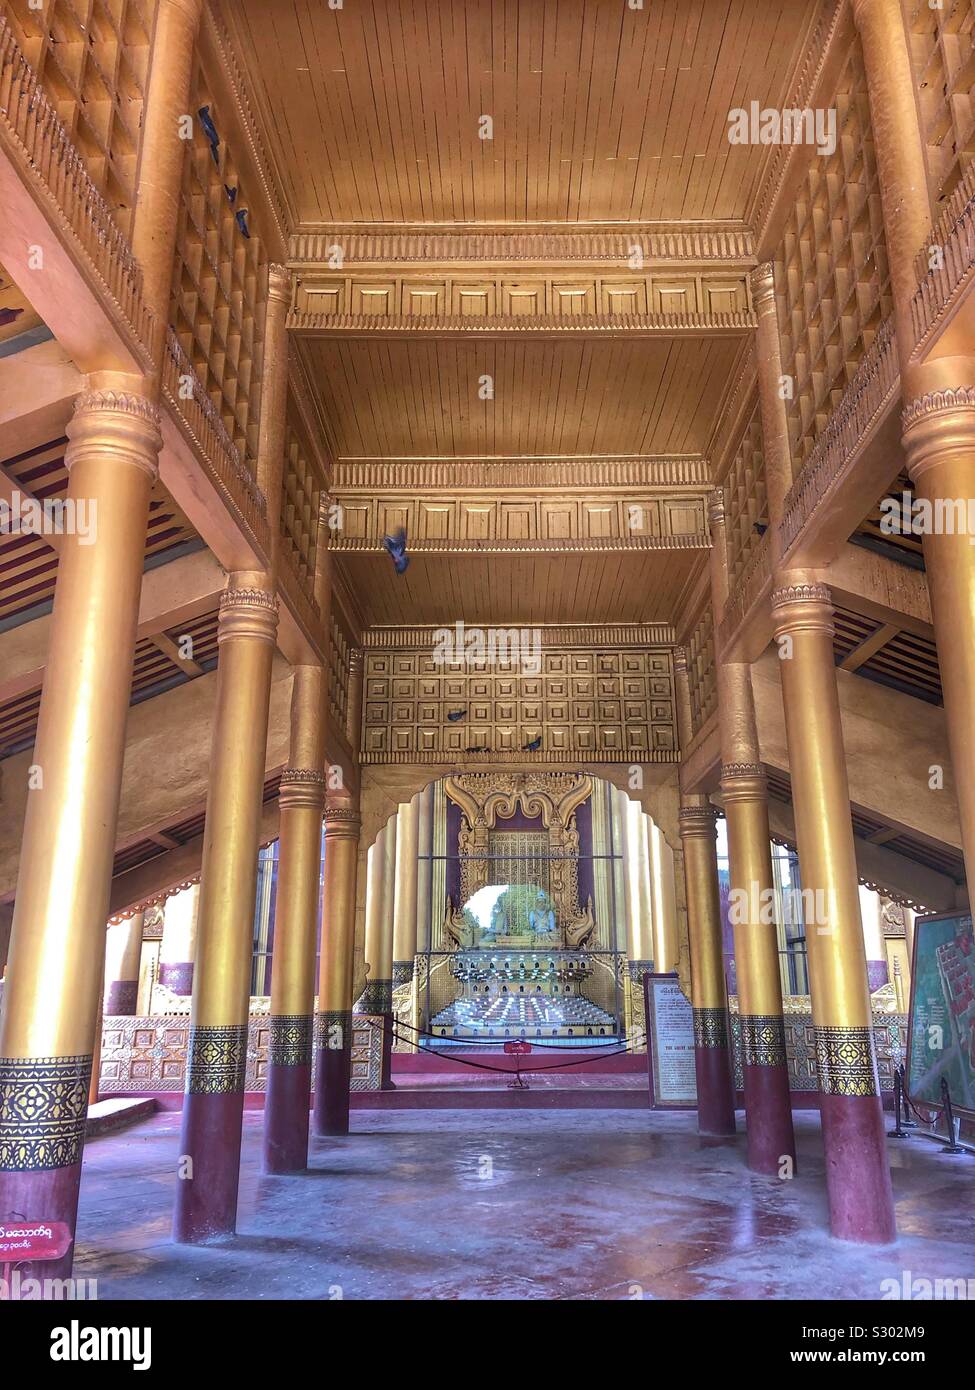 Mandalay Royal Palace. Stock Photo